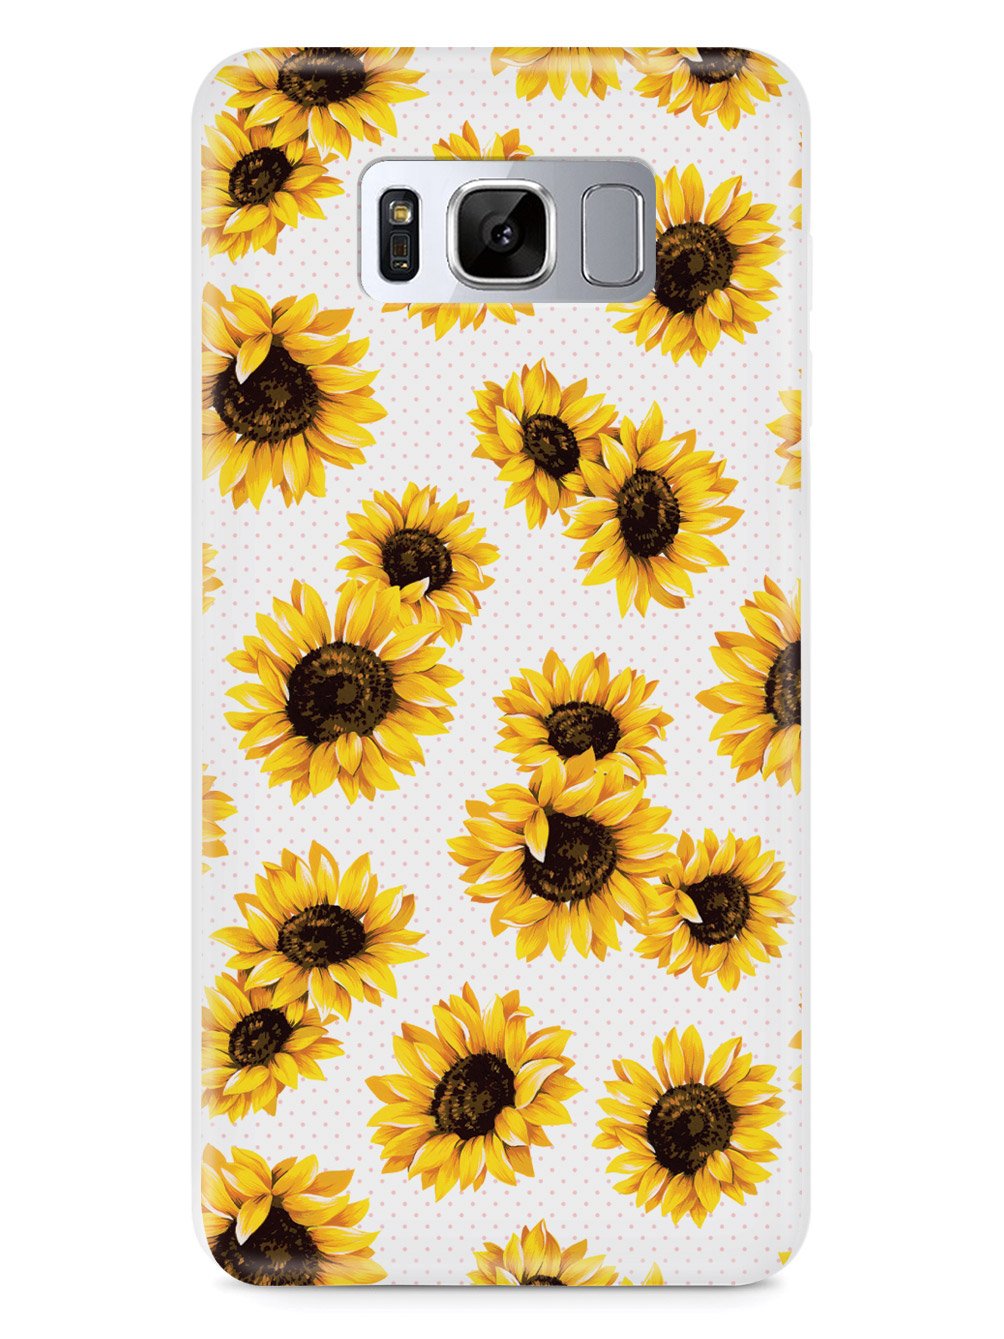 Sunflower Pattern - White Case